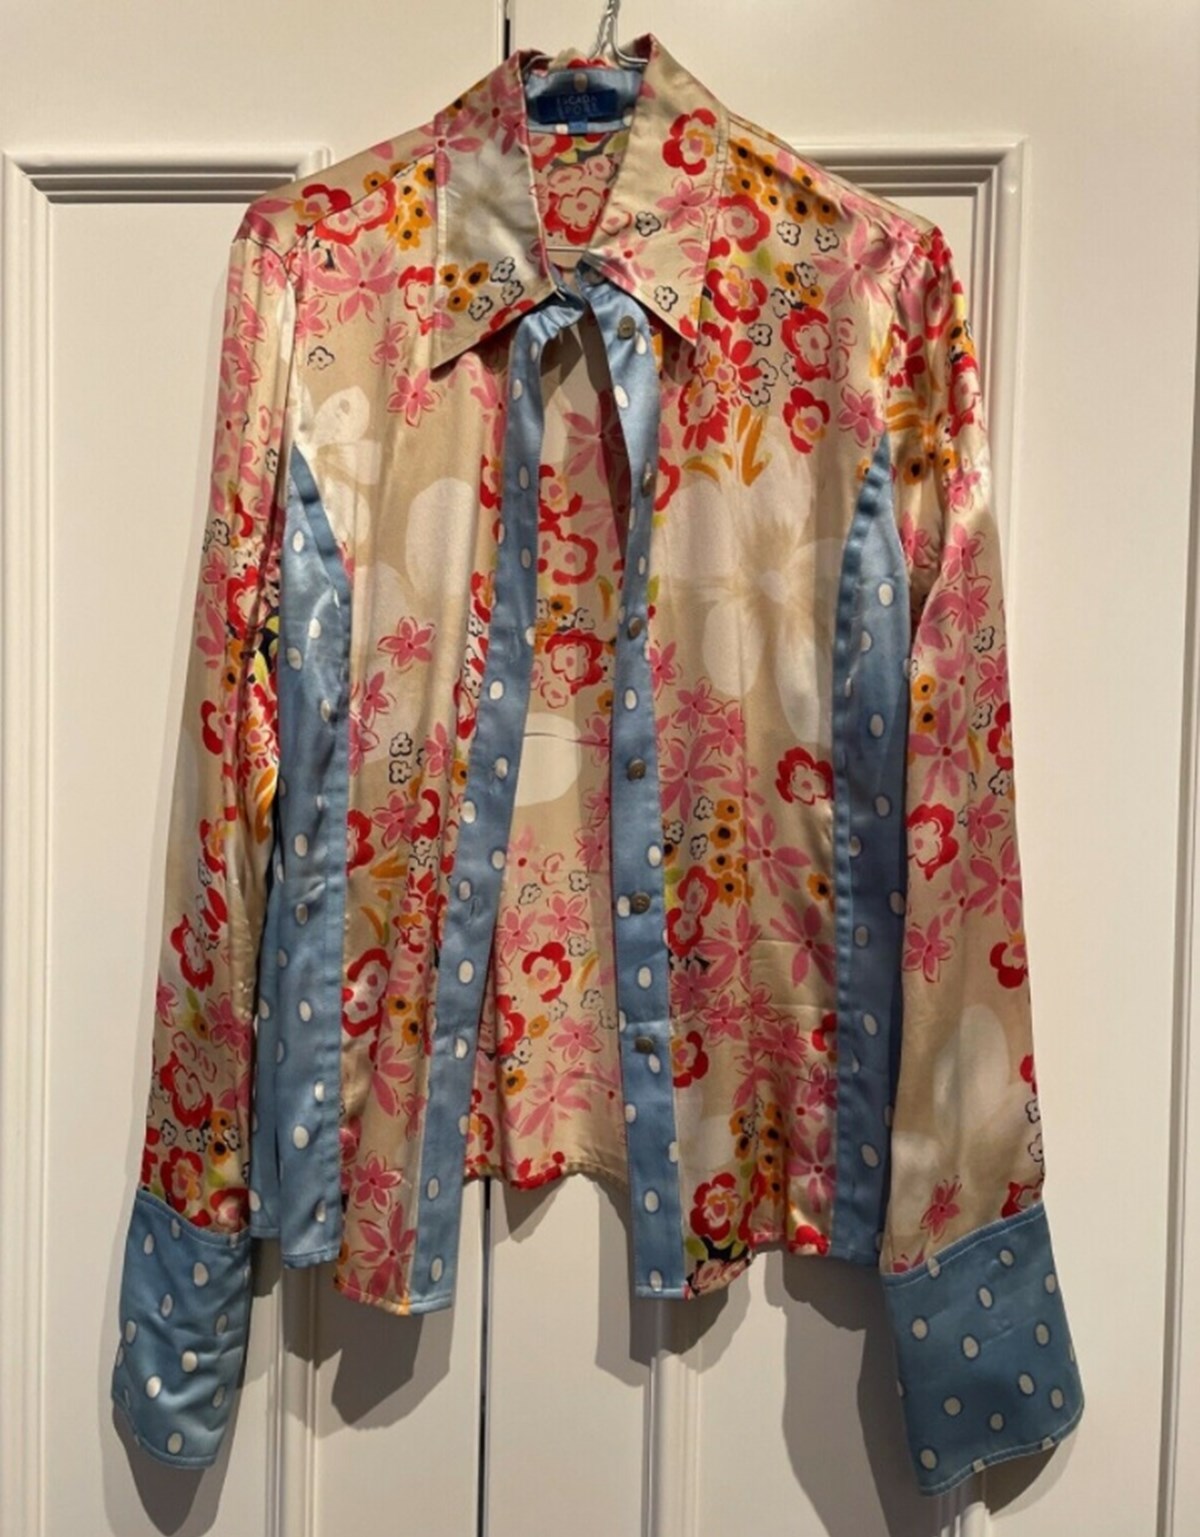 200 kroner kan du købe denne skjorte for af Christina fra Frederikberg C. Skjorten er i størrelse 40, den er god men brugt, og så er den lavet af silke. Mærket er Escada